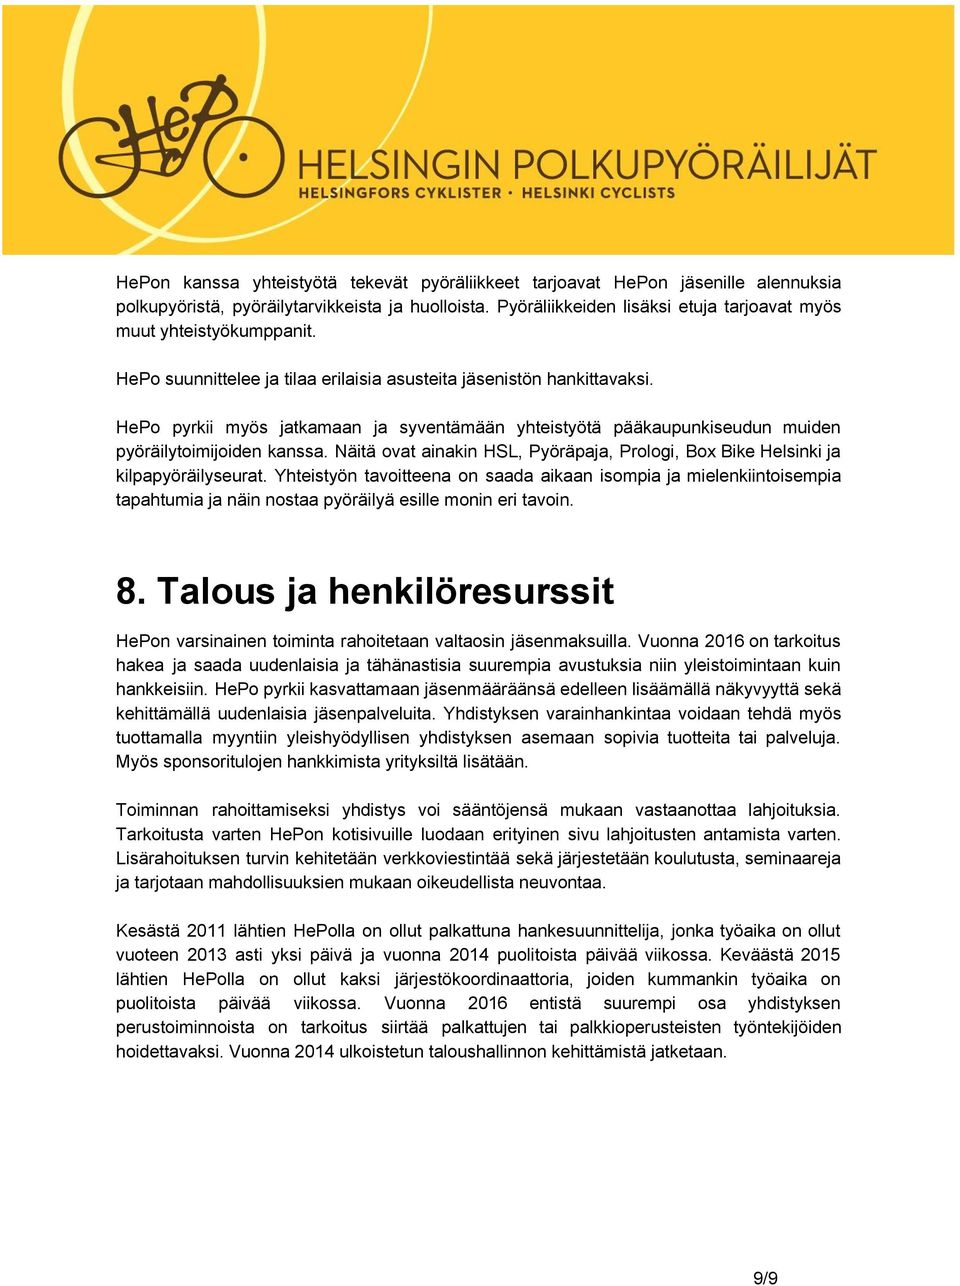 HePo pyrkii myös jatkamaan ja syventämään yhteistyötä pääkaupunkiseudun muiden pyöräilytoimijoiden kanssa. Näitä ovat ainakin HSL, Pyöräpaja, Prologi, Box Bike Helsinki ja kilpapyöräilyseurat.